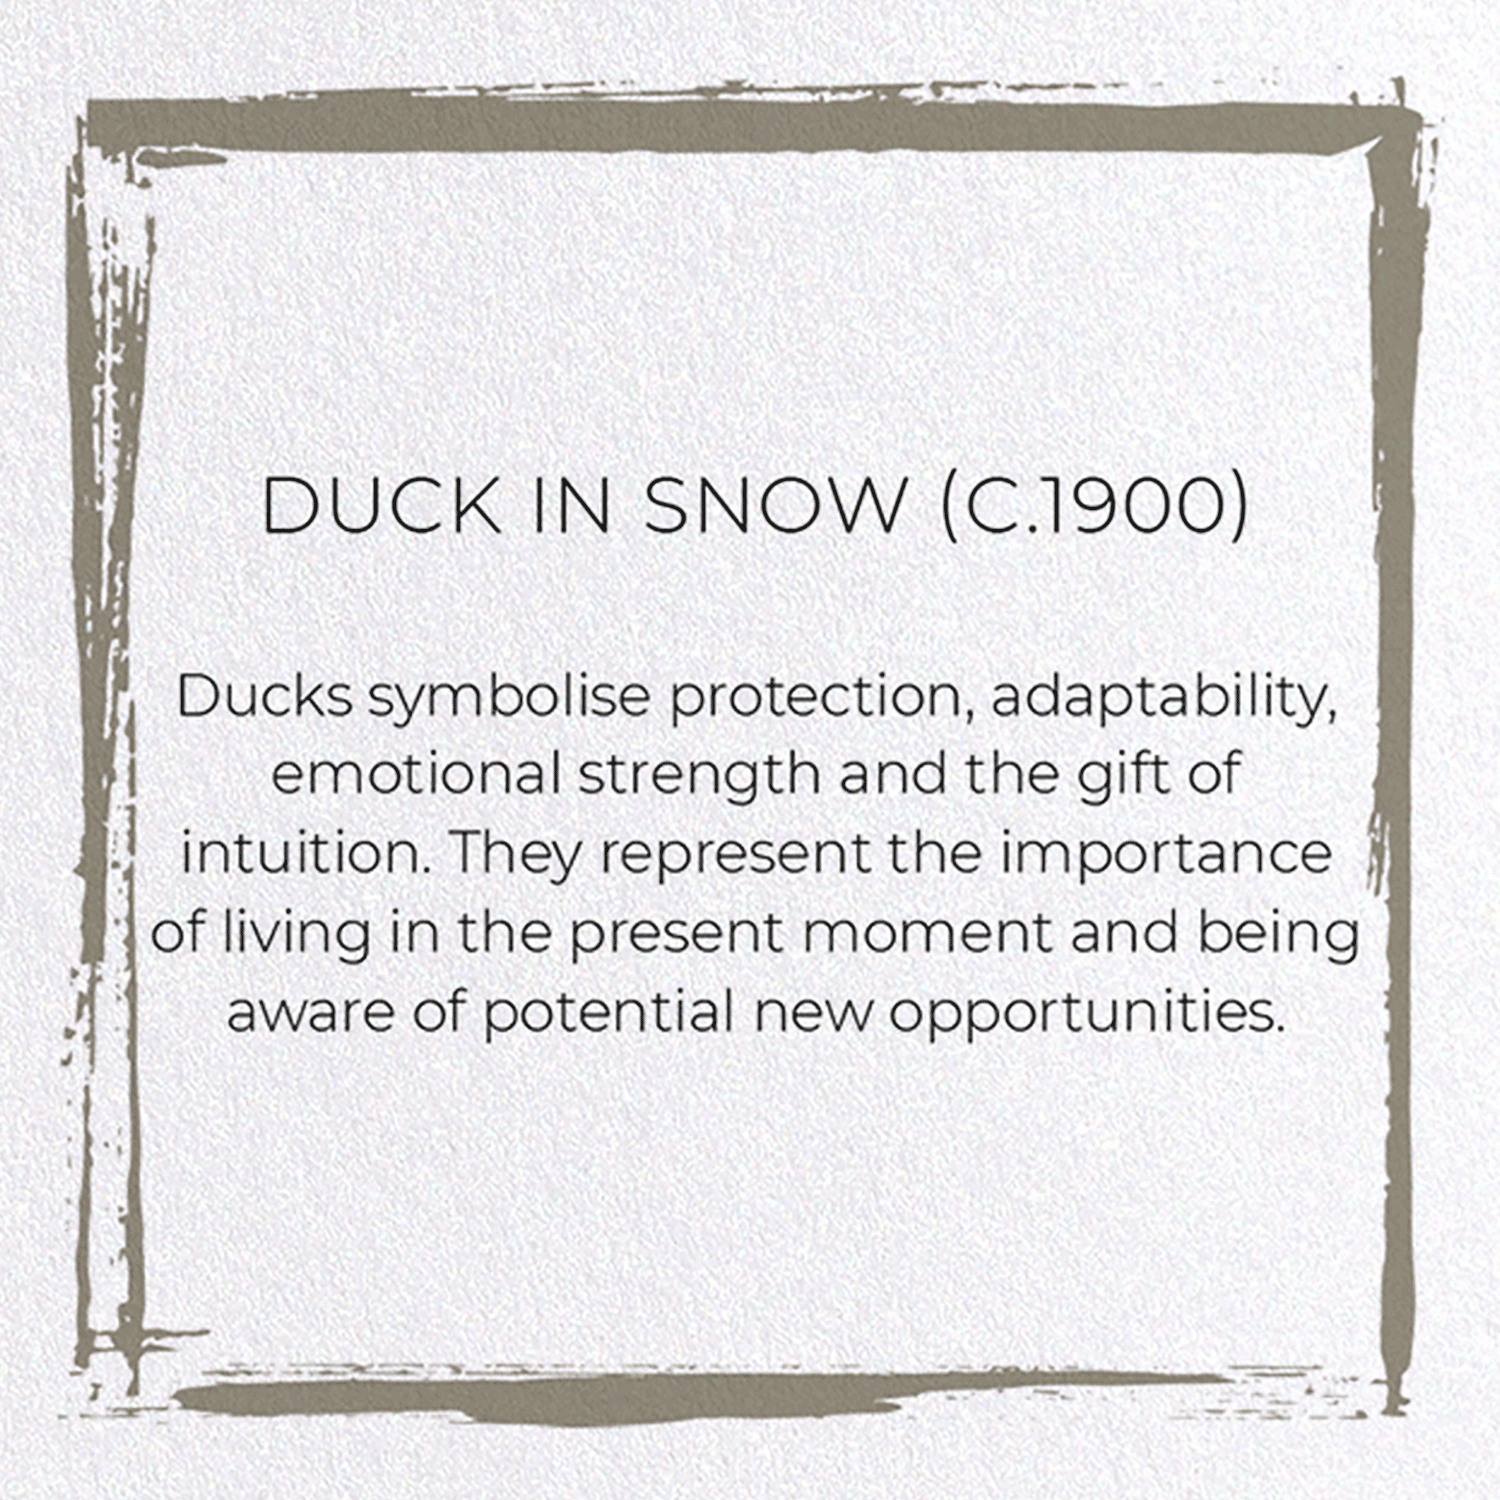 DUCK IN SNOW (C.1900)